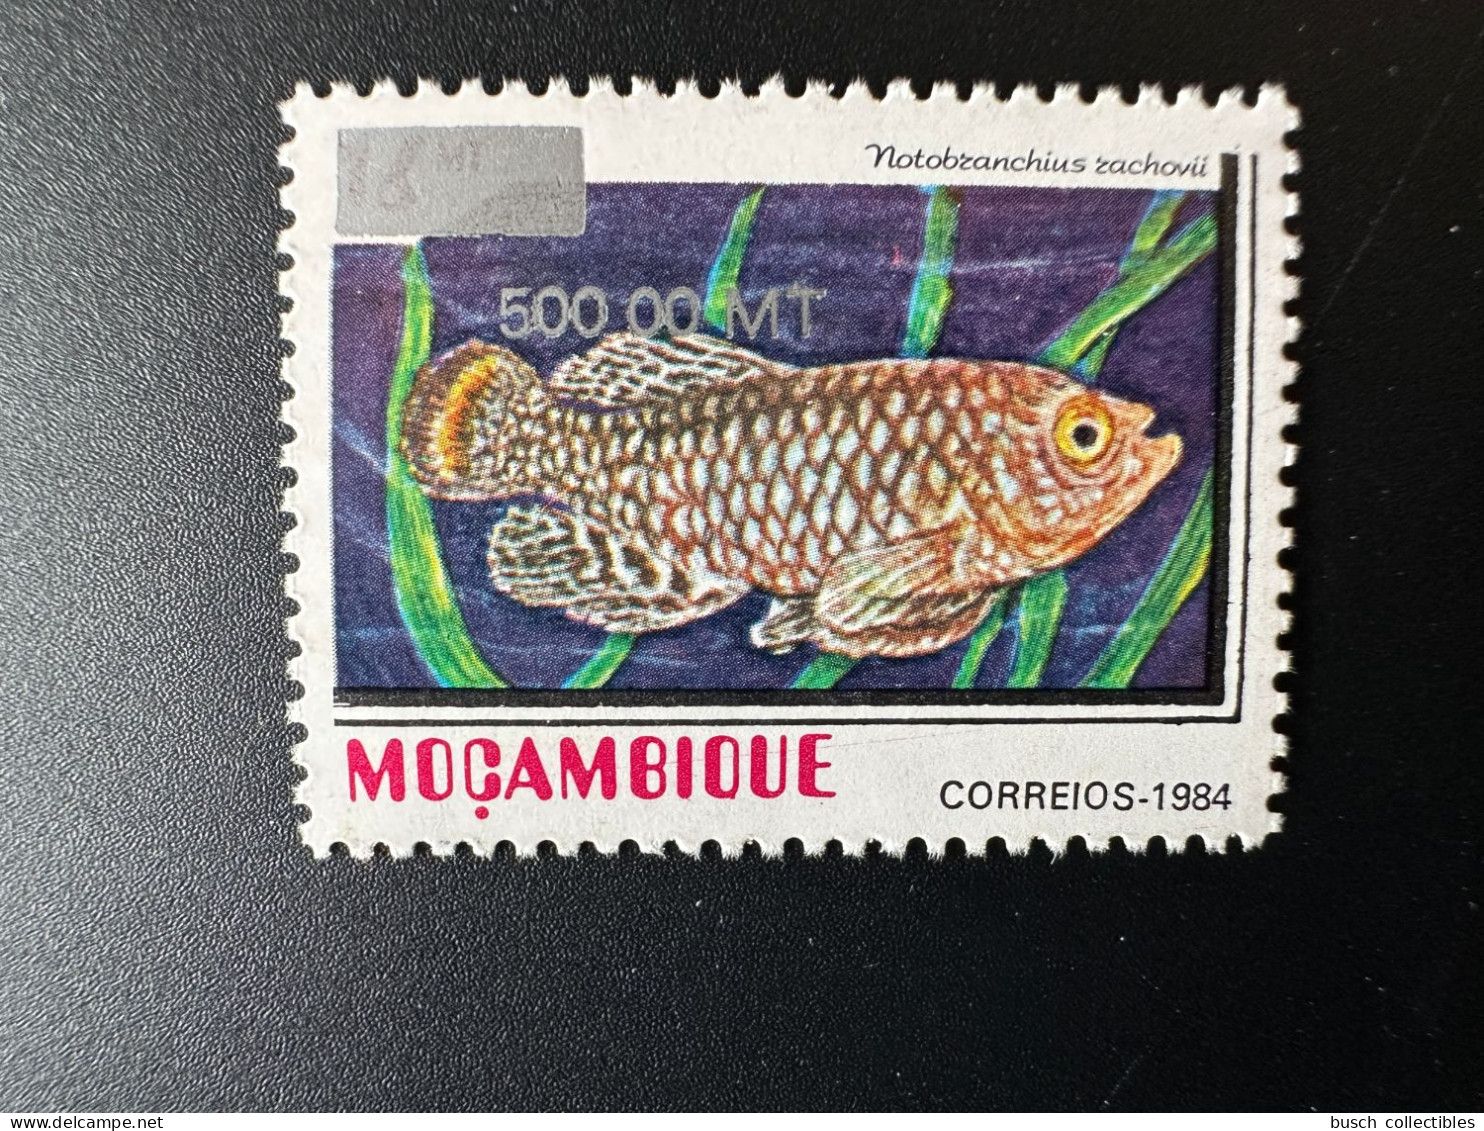 Moçambique Mozambique 1997 / 2000 Mi. 1552 Fisch Fish Poisson Notobranchius Rachovii Overprint Surchargé RARE - Mosambik